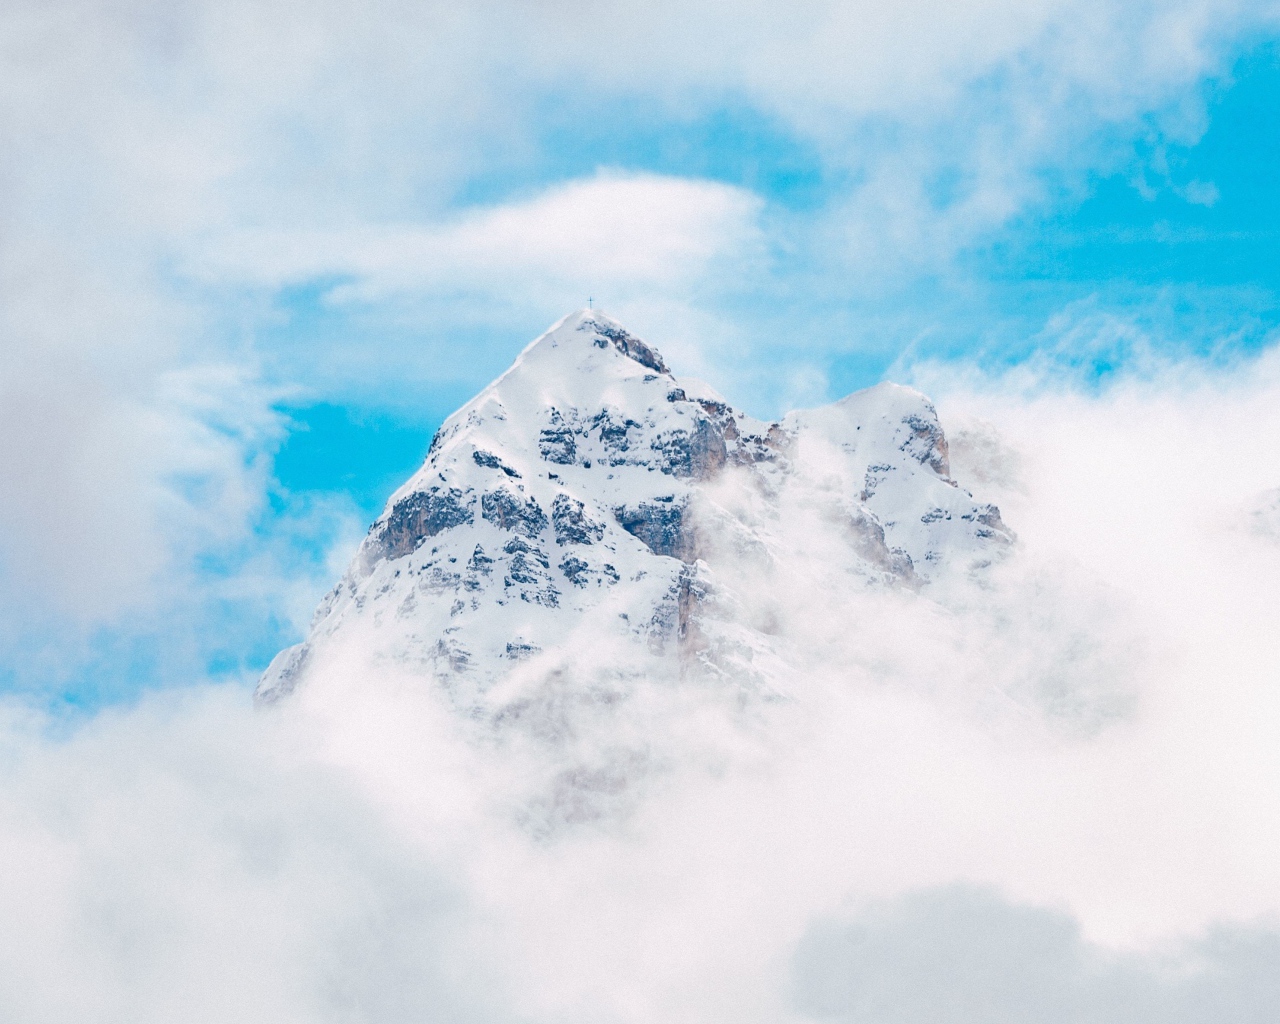 Заснеженная вершина горы в белых облаках под голубым небом